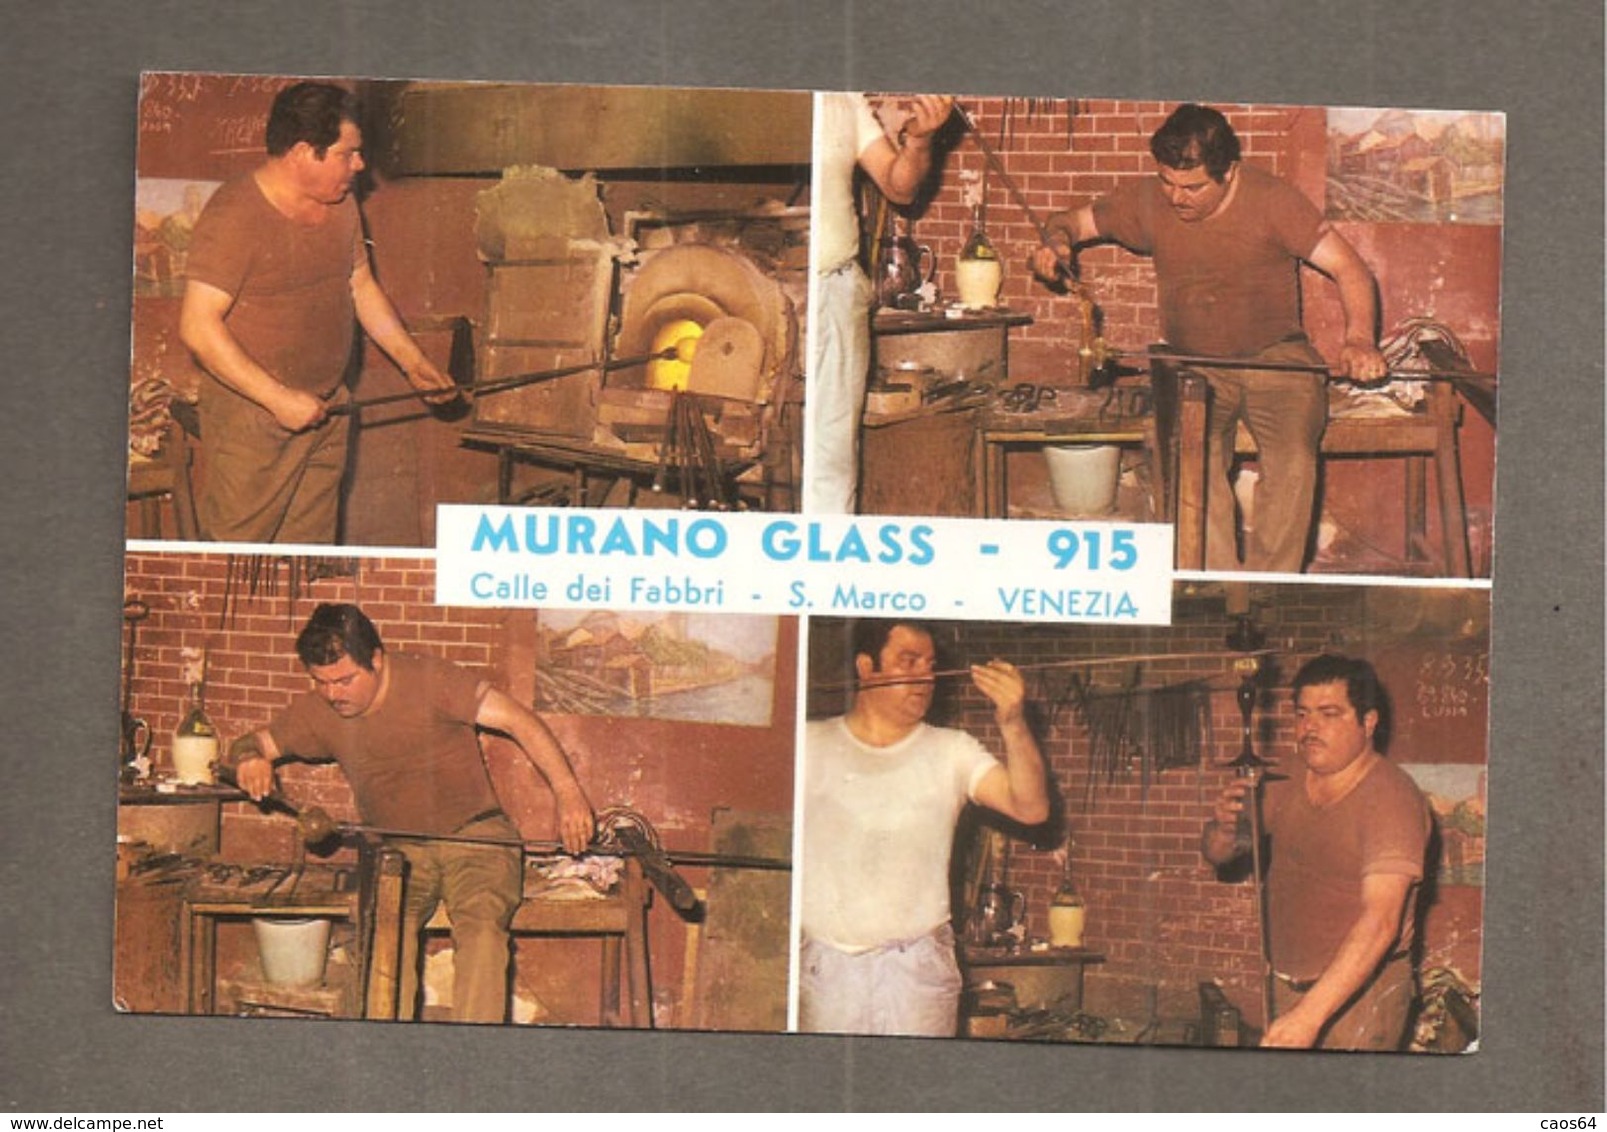 MURANO GLASS - 915 S. MARCO VENEZIA CARTOLINA LAVORAZIONE VETRO - Negozi